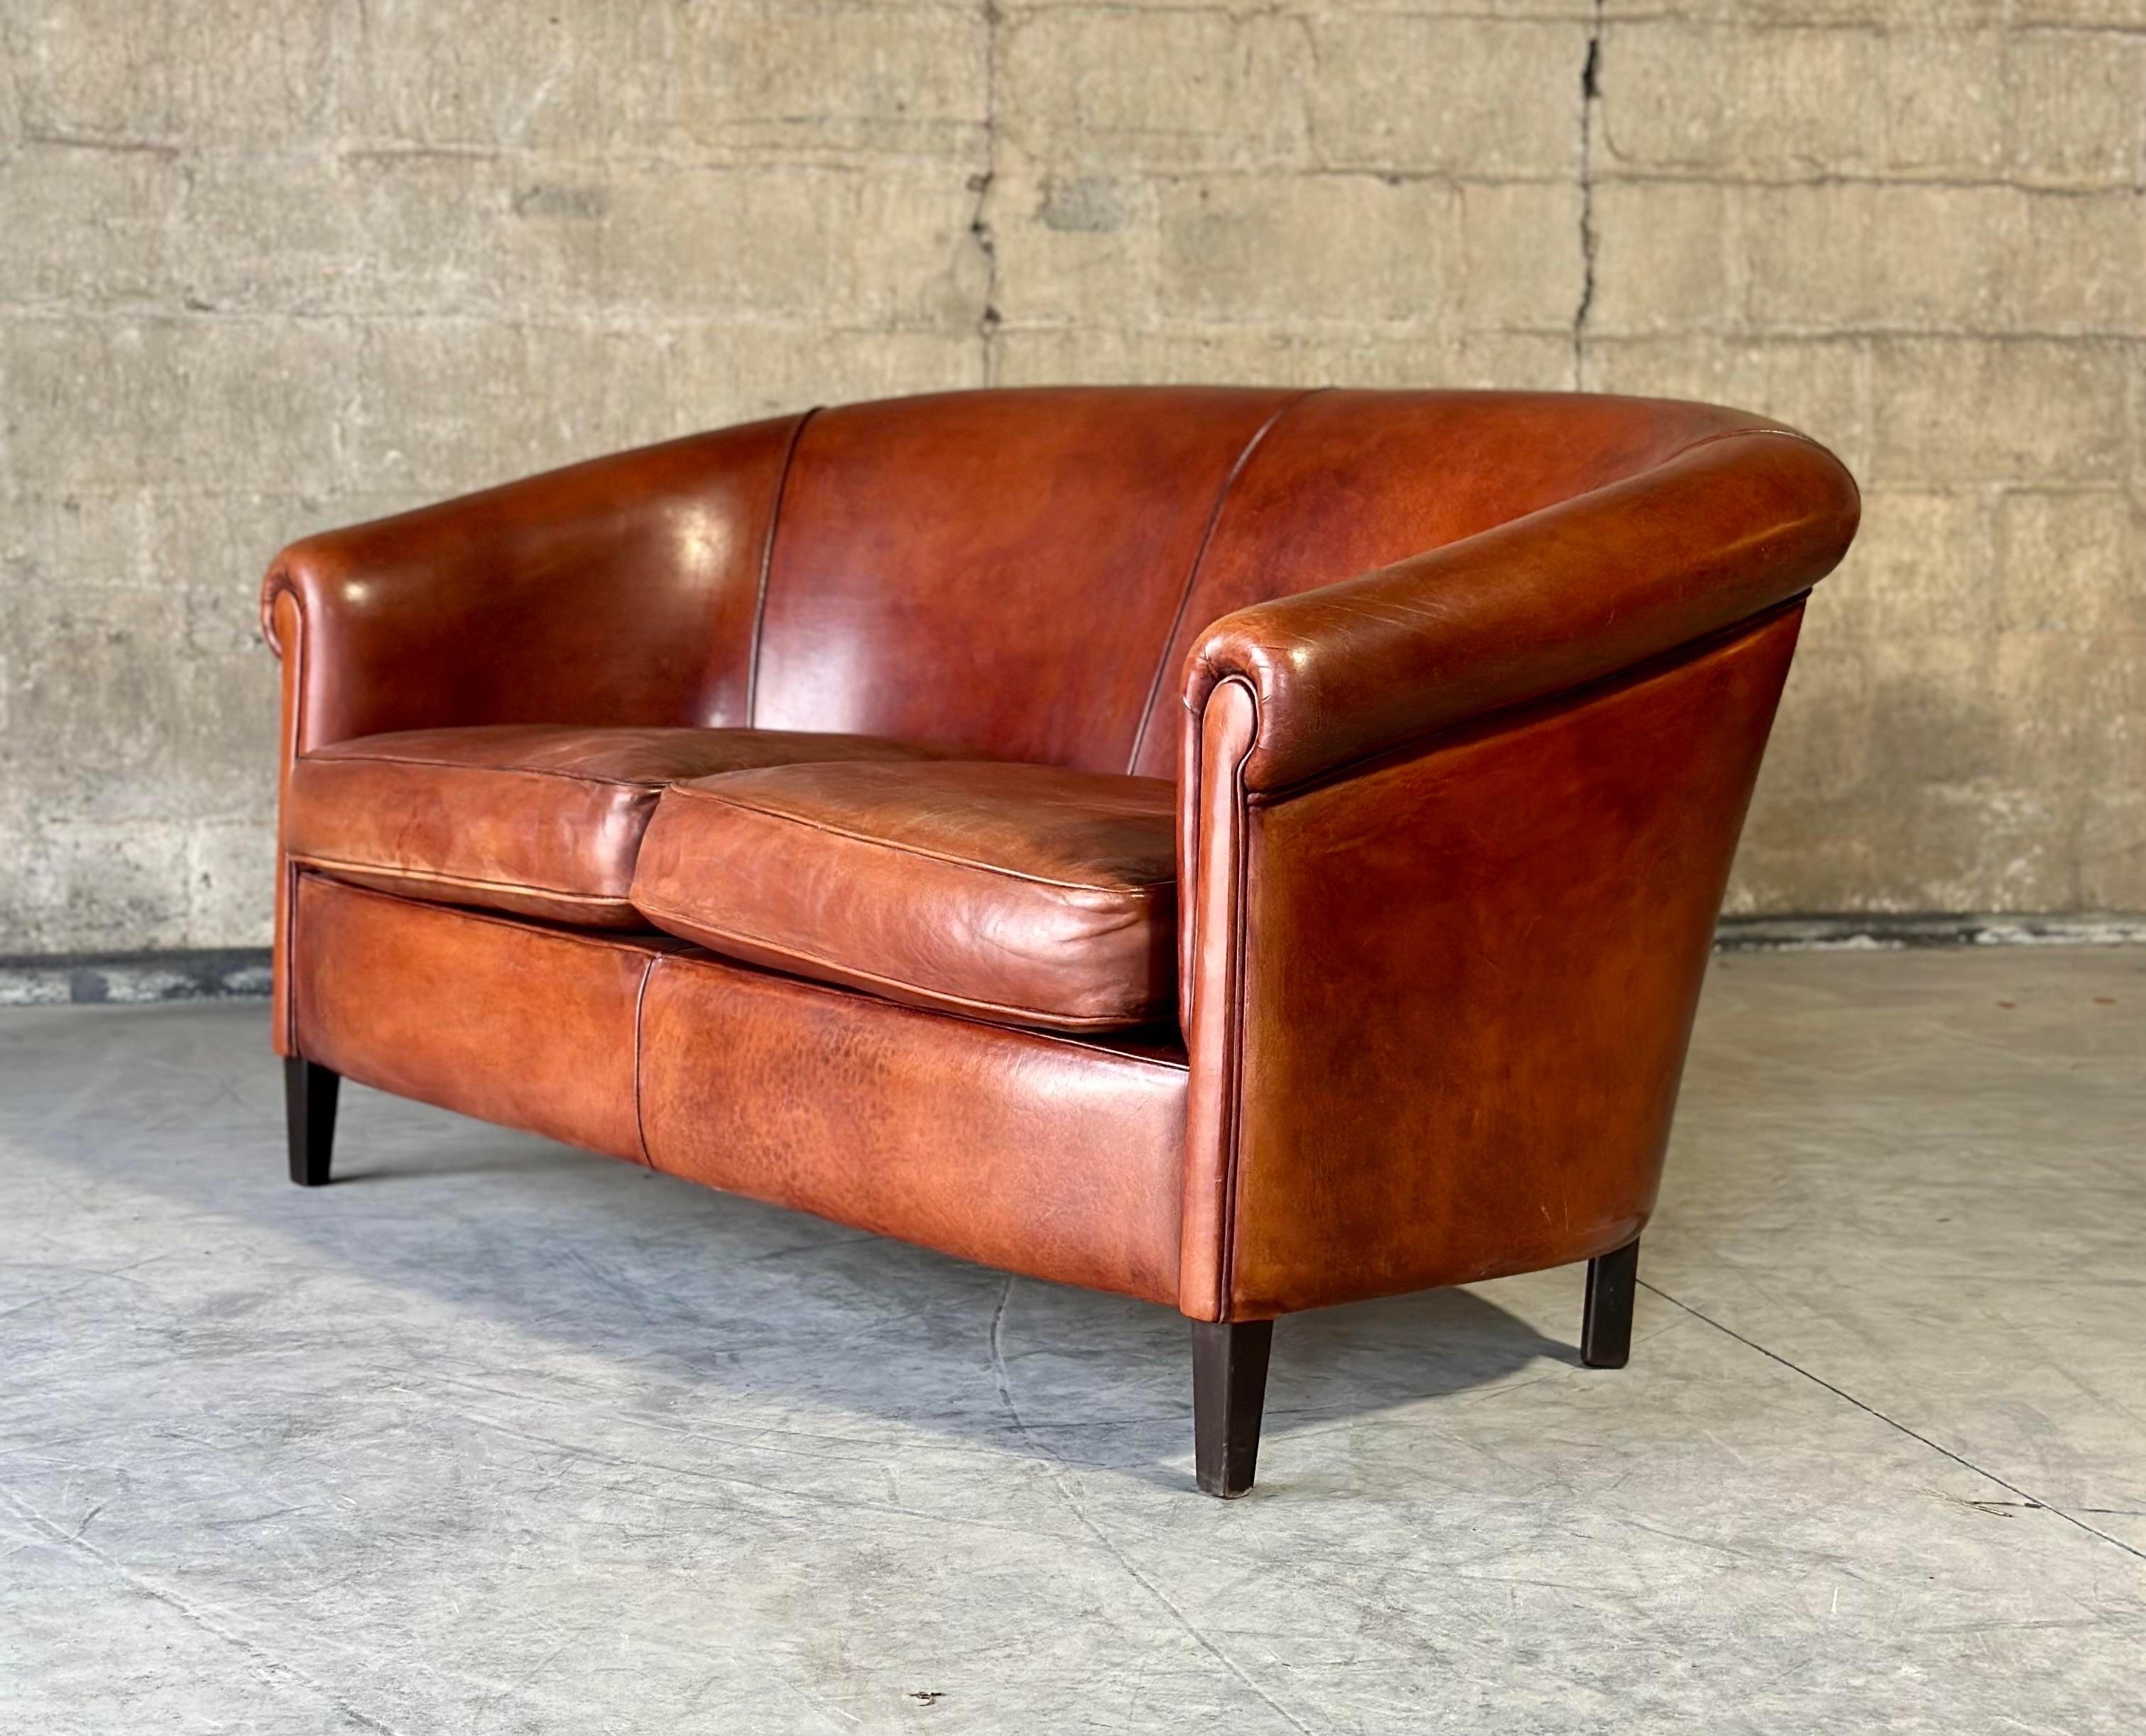 Zweisitzer-Sofa aus Schafsleder. Wunderschönes Leder, weich und haltbar mit der perfekten Menge an Variation und Abnutzung. Bereit für weitere 100 Jahre!